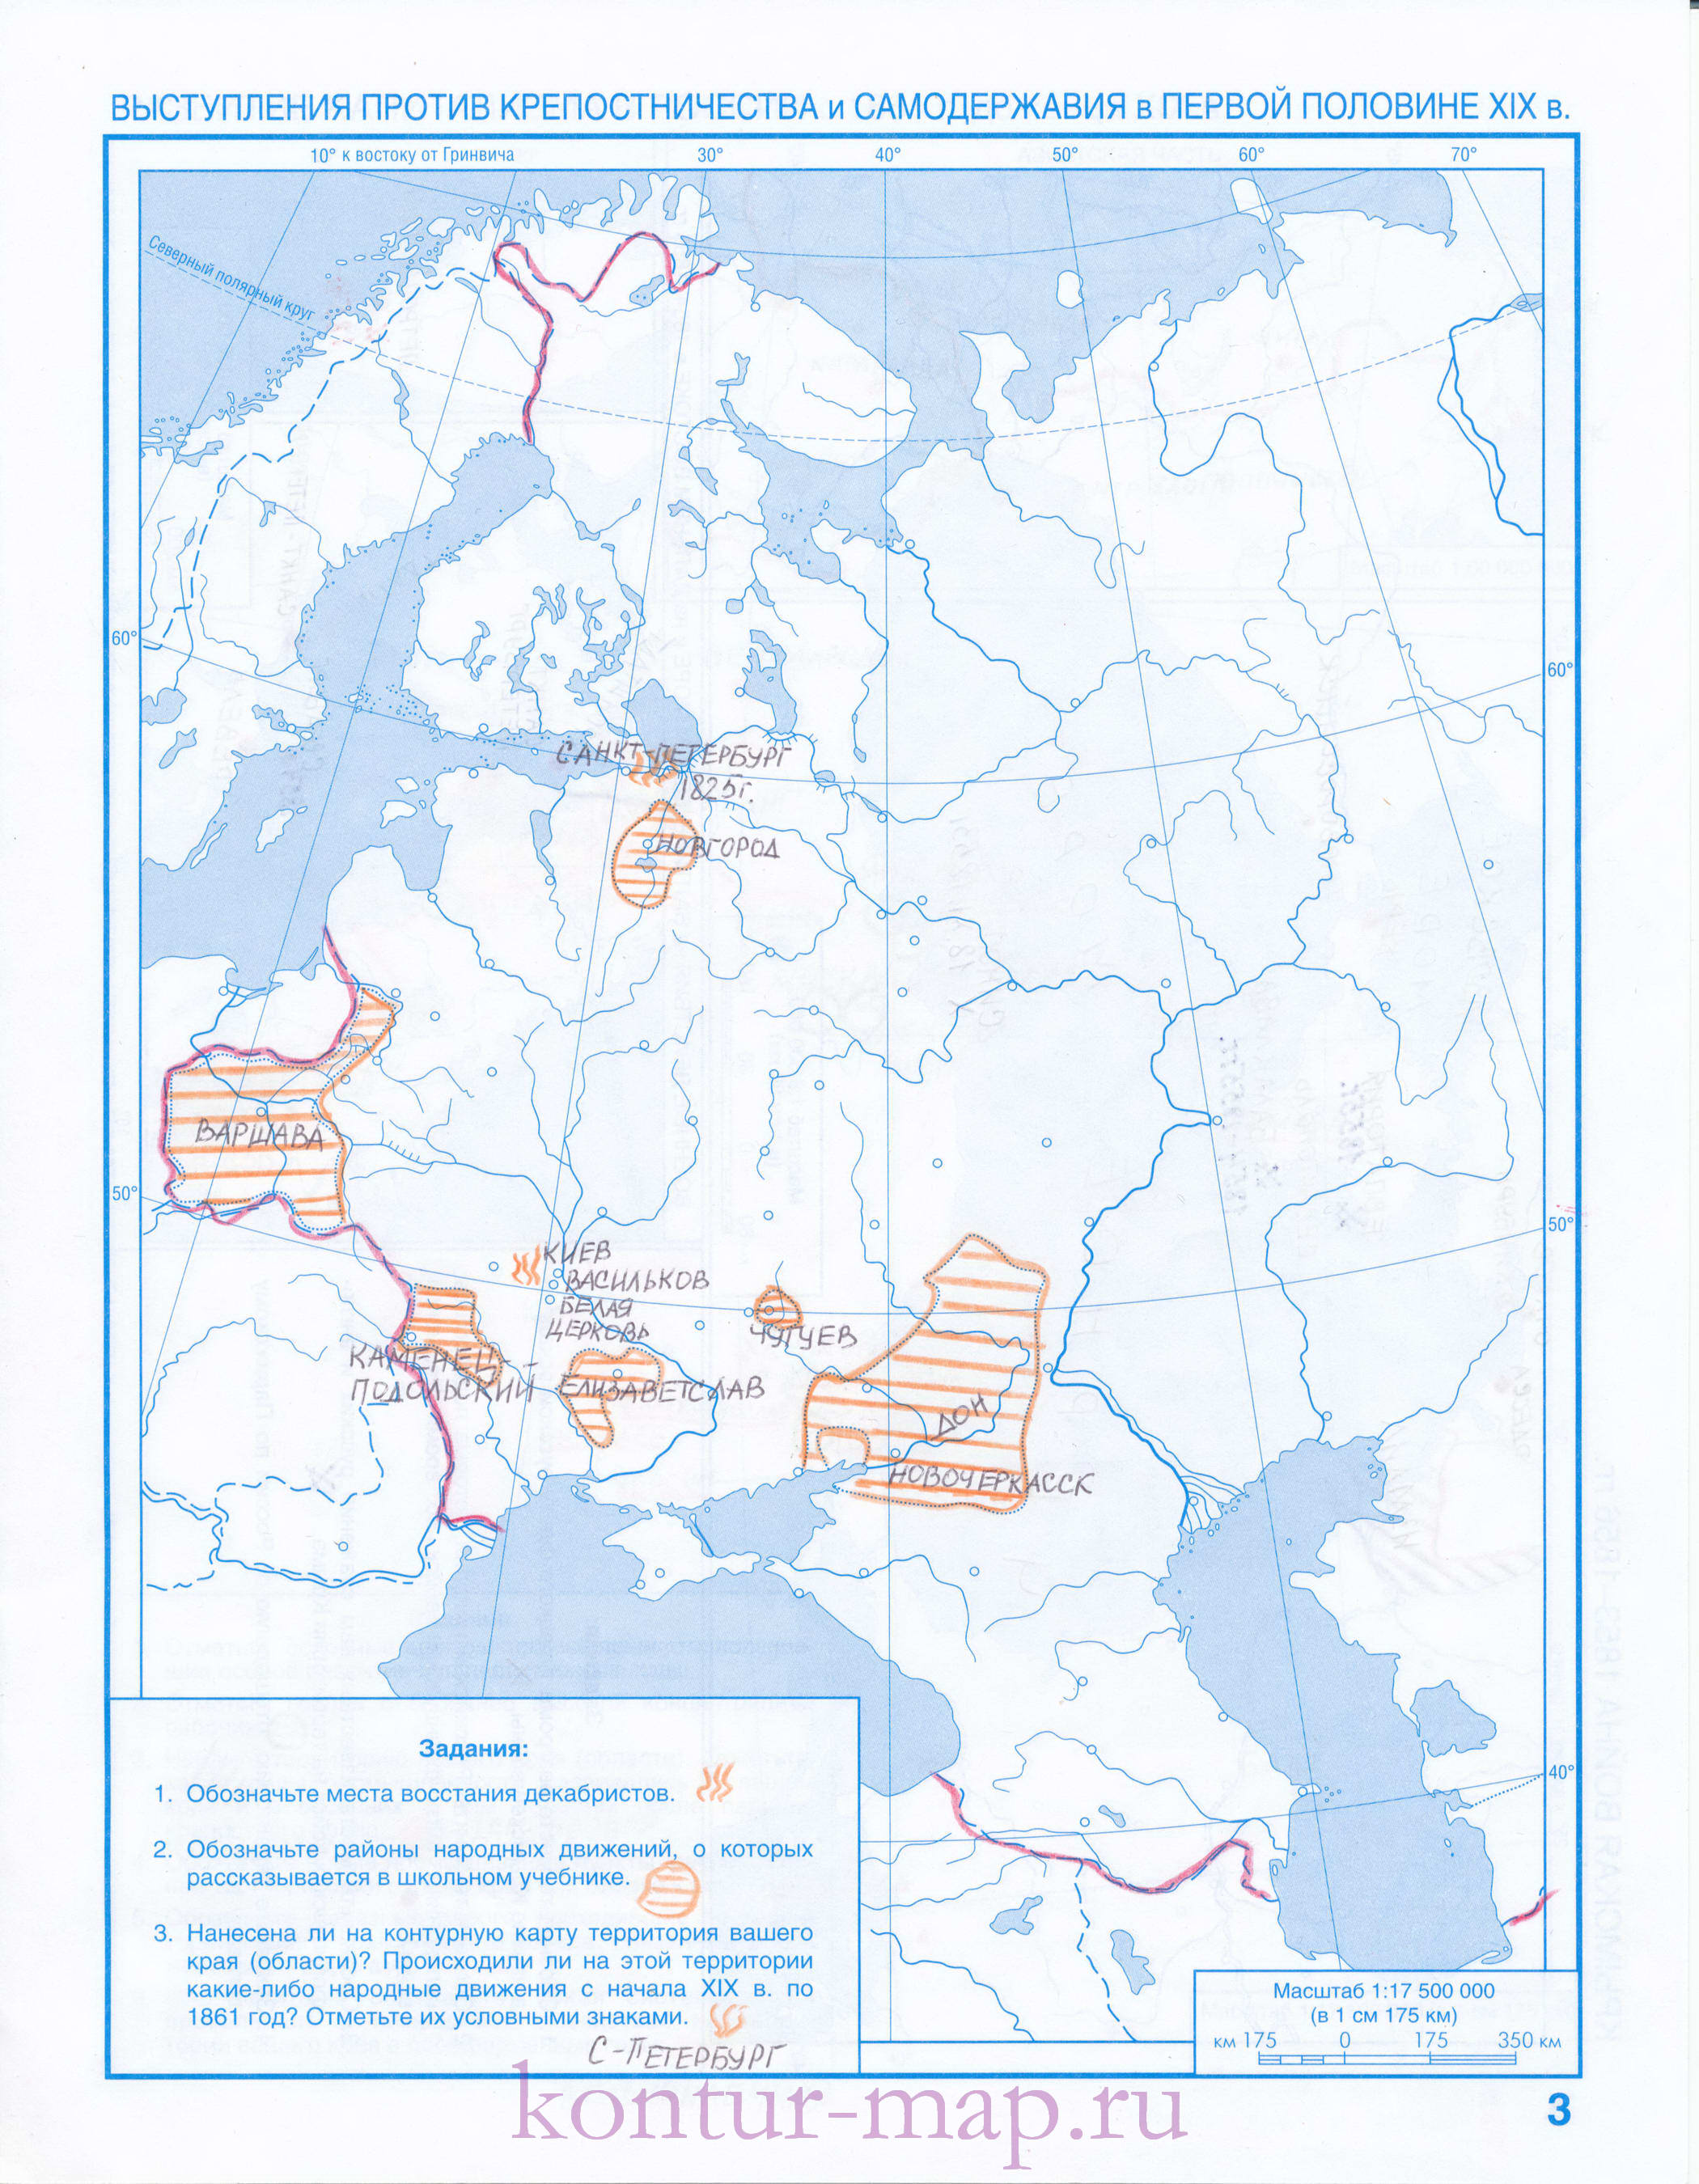 Готовая контурная карта по истории - выступления против крепостничества и  самодержавия в России в первой половине 19 века